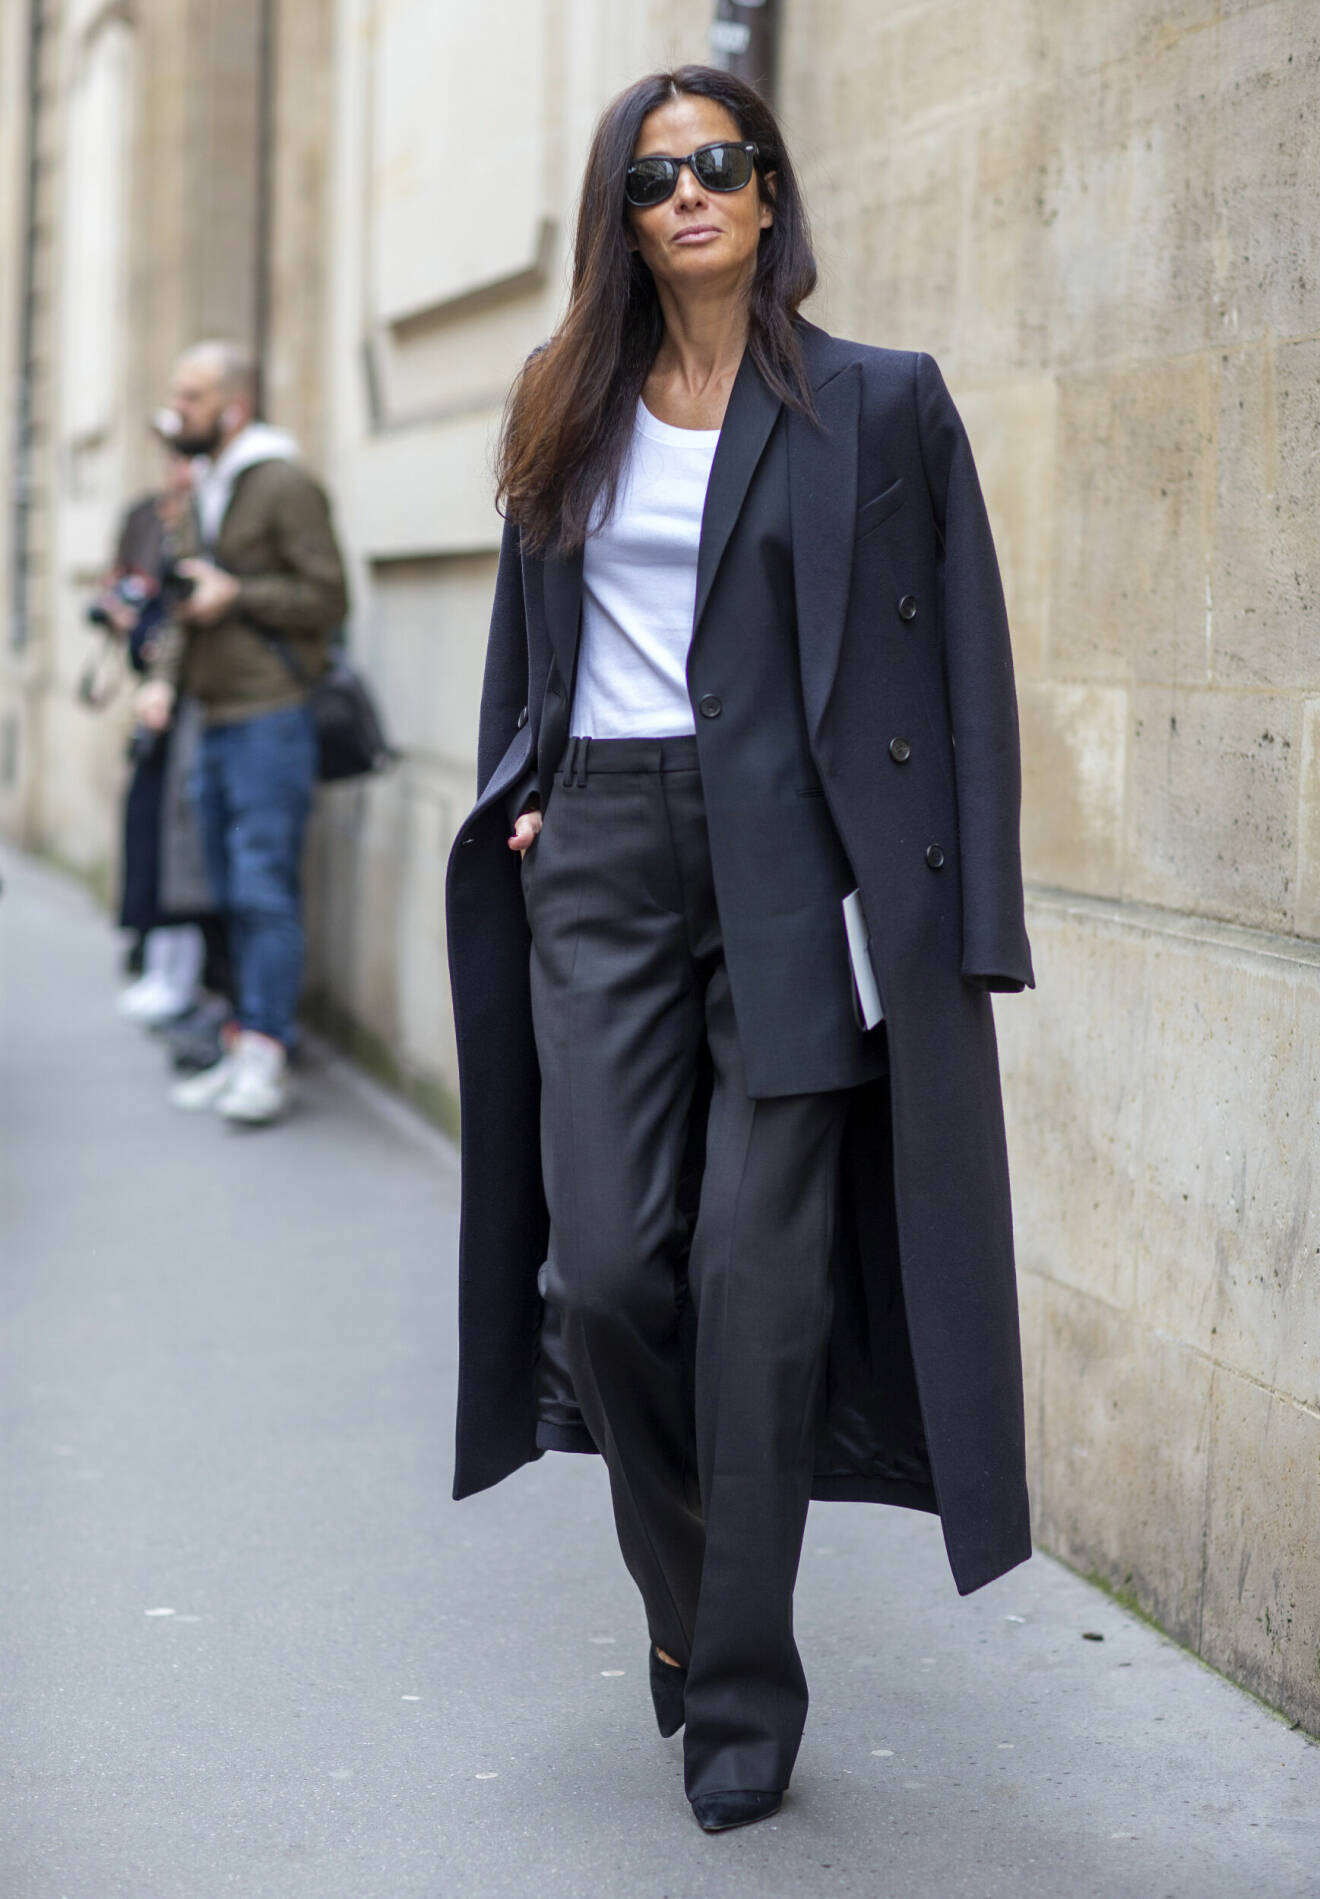 Svarta byxor bärs tillsammans med matchande kavaj i en klassisk look.